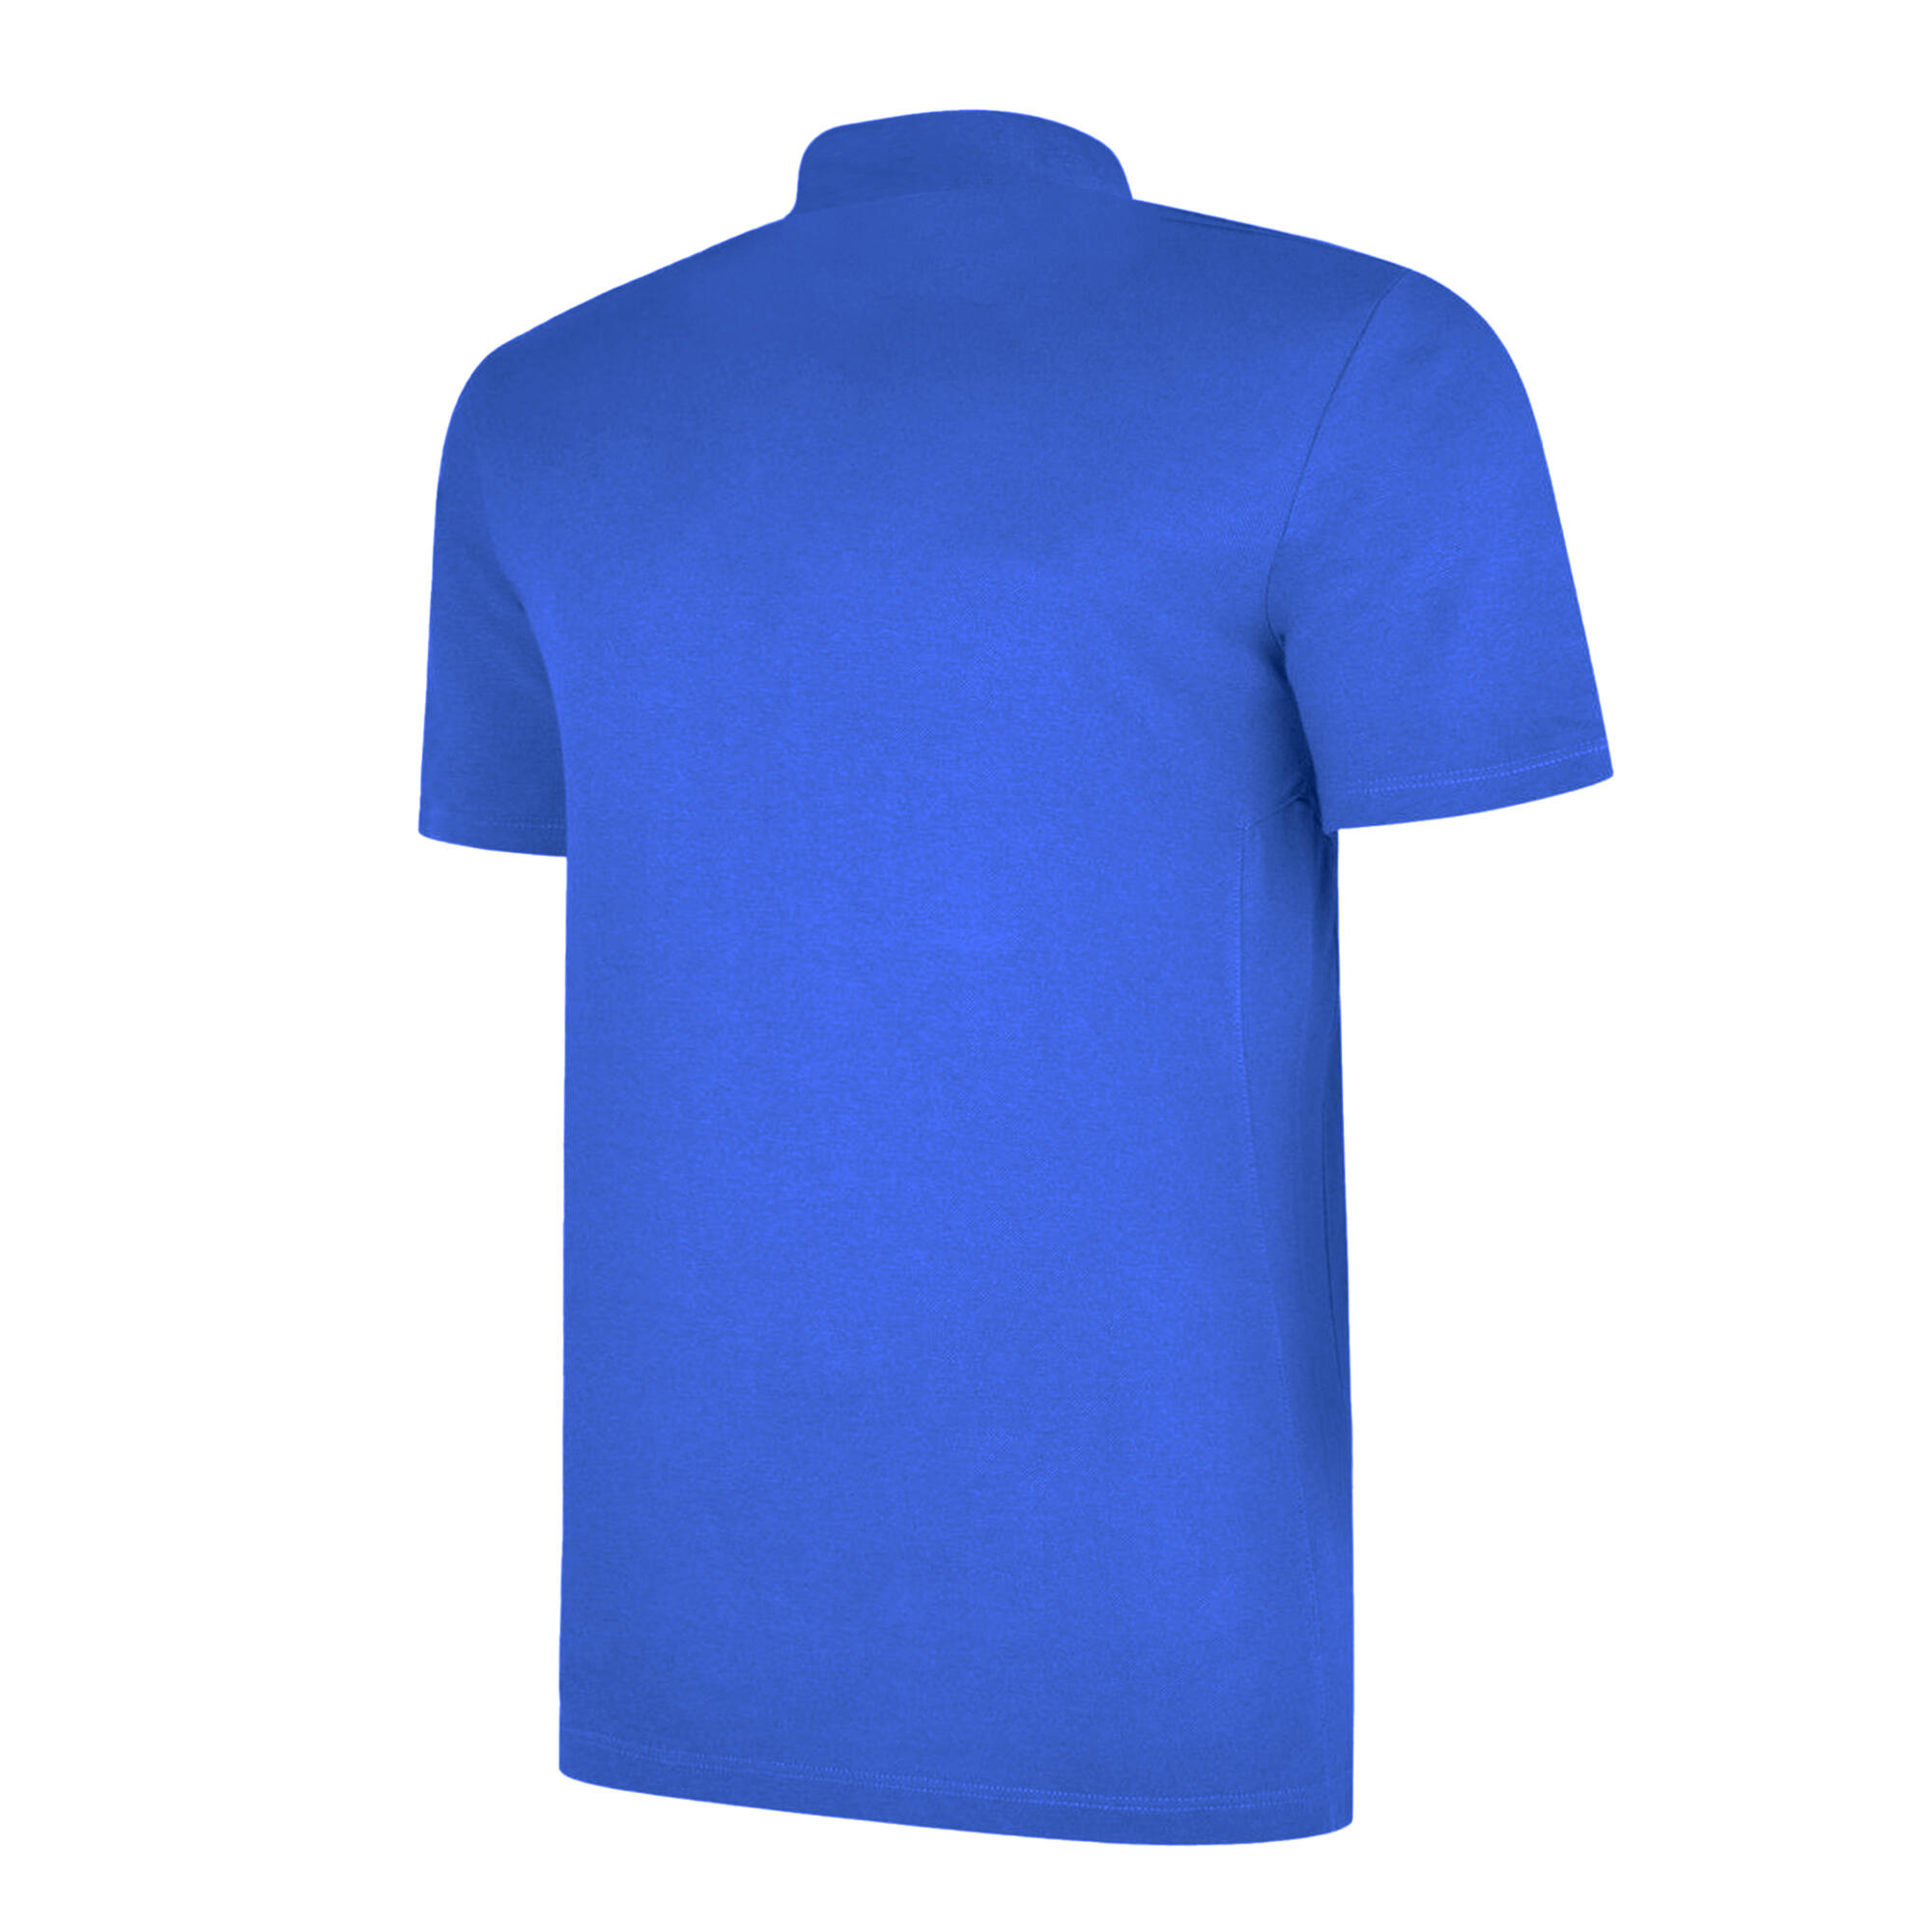 UMBRO Mens Essential Polo Shirt (Royal Blue/White)